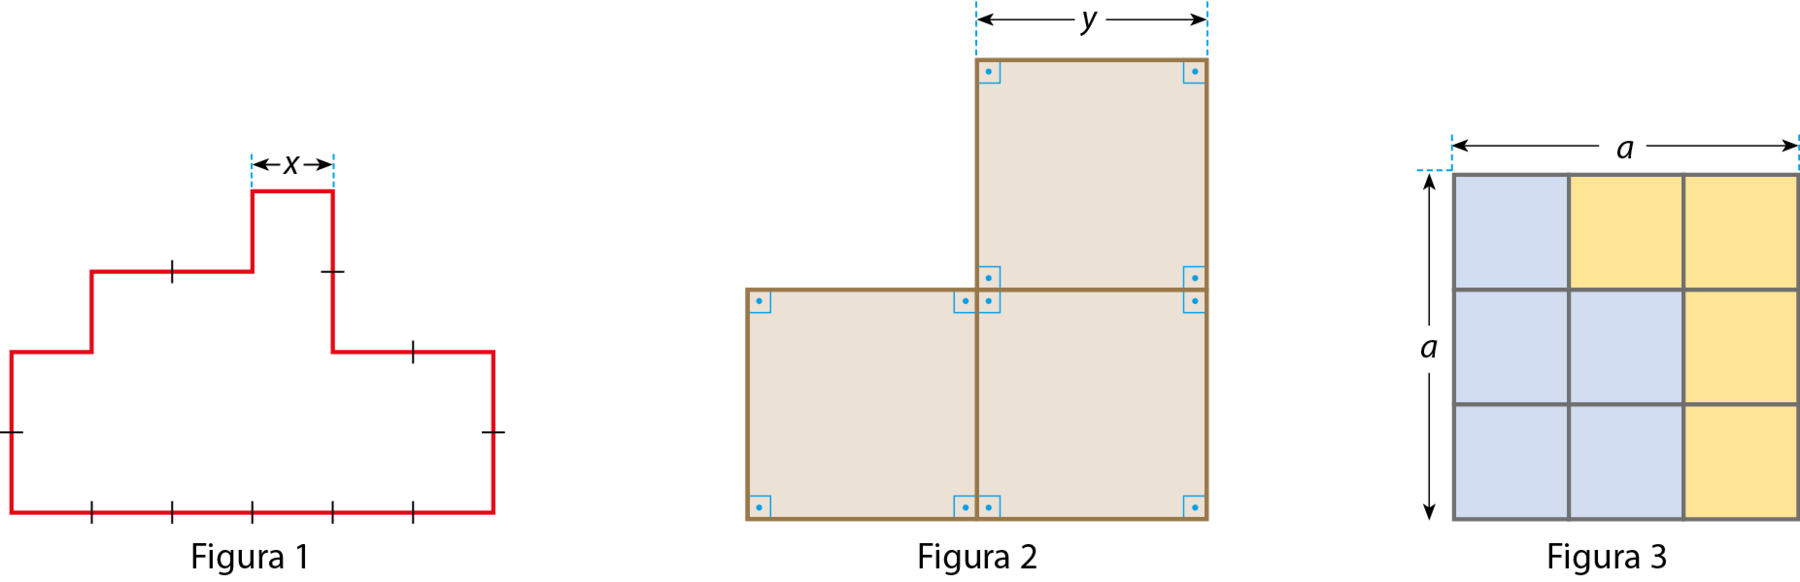 Ilustração. Figura composta por 10 lados em cada lado há indicações de divisões e cada divisão mede xis. Ilustração. Dois quadrados (um ao lado do outro) e acima do quadrado à direita um outro quadrado. A medida do lado de cada quadrado é y.  Ilustração. Quadrado dividido em 9 quadradinhos de mesma medida. A medida do lado do quadrado é a. Há 4 quadradinhos pintados de amarelo e 5 de azul.